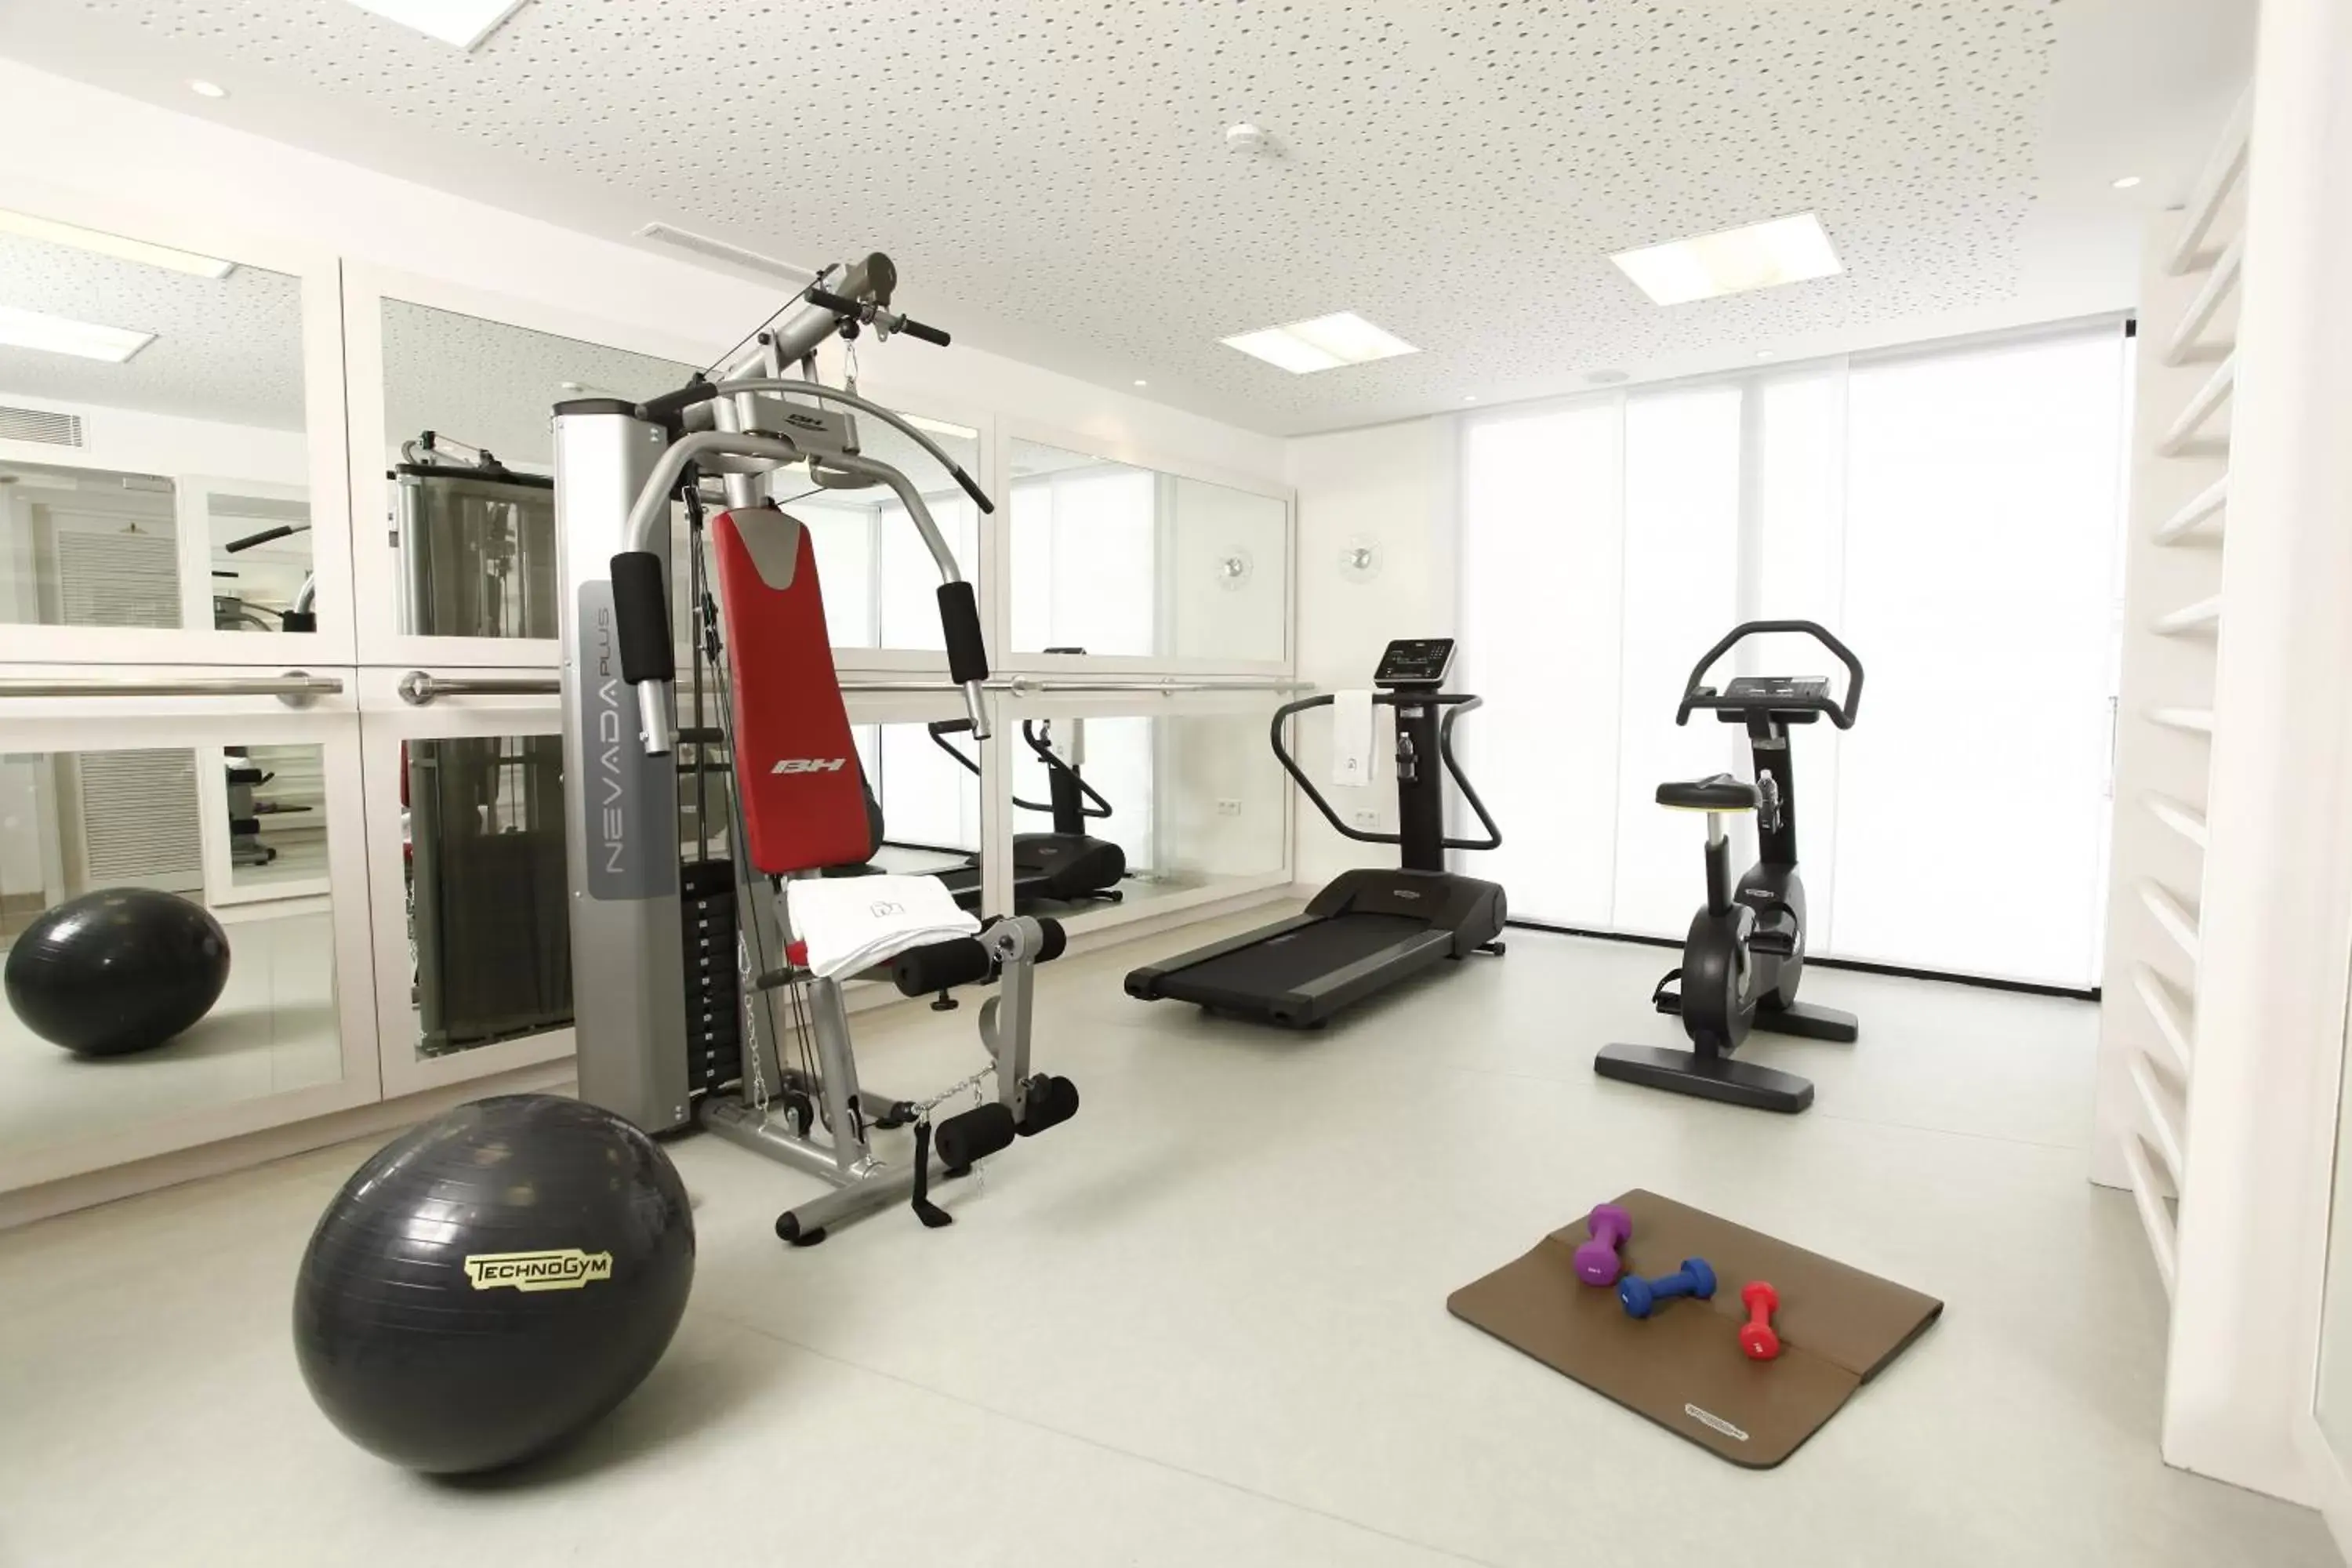 Fitness centre/facilities, Fitness Center/Facilities in Dar El Marsa Hotel & Spa